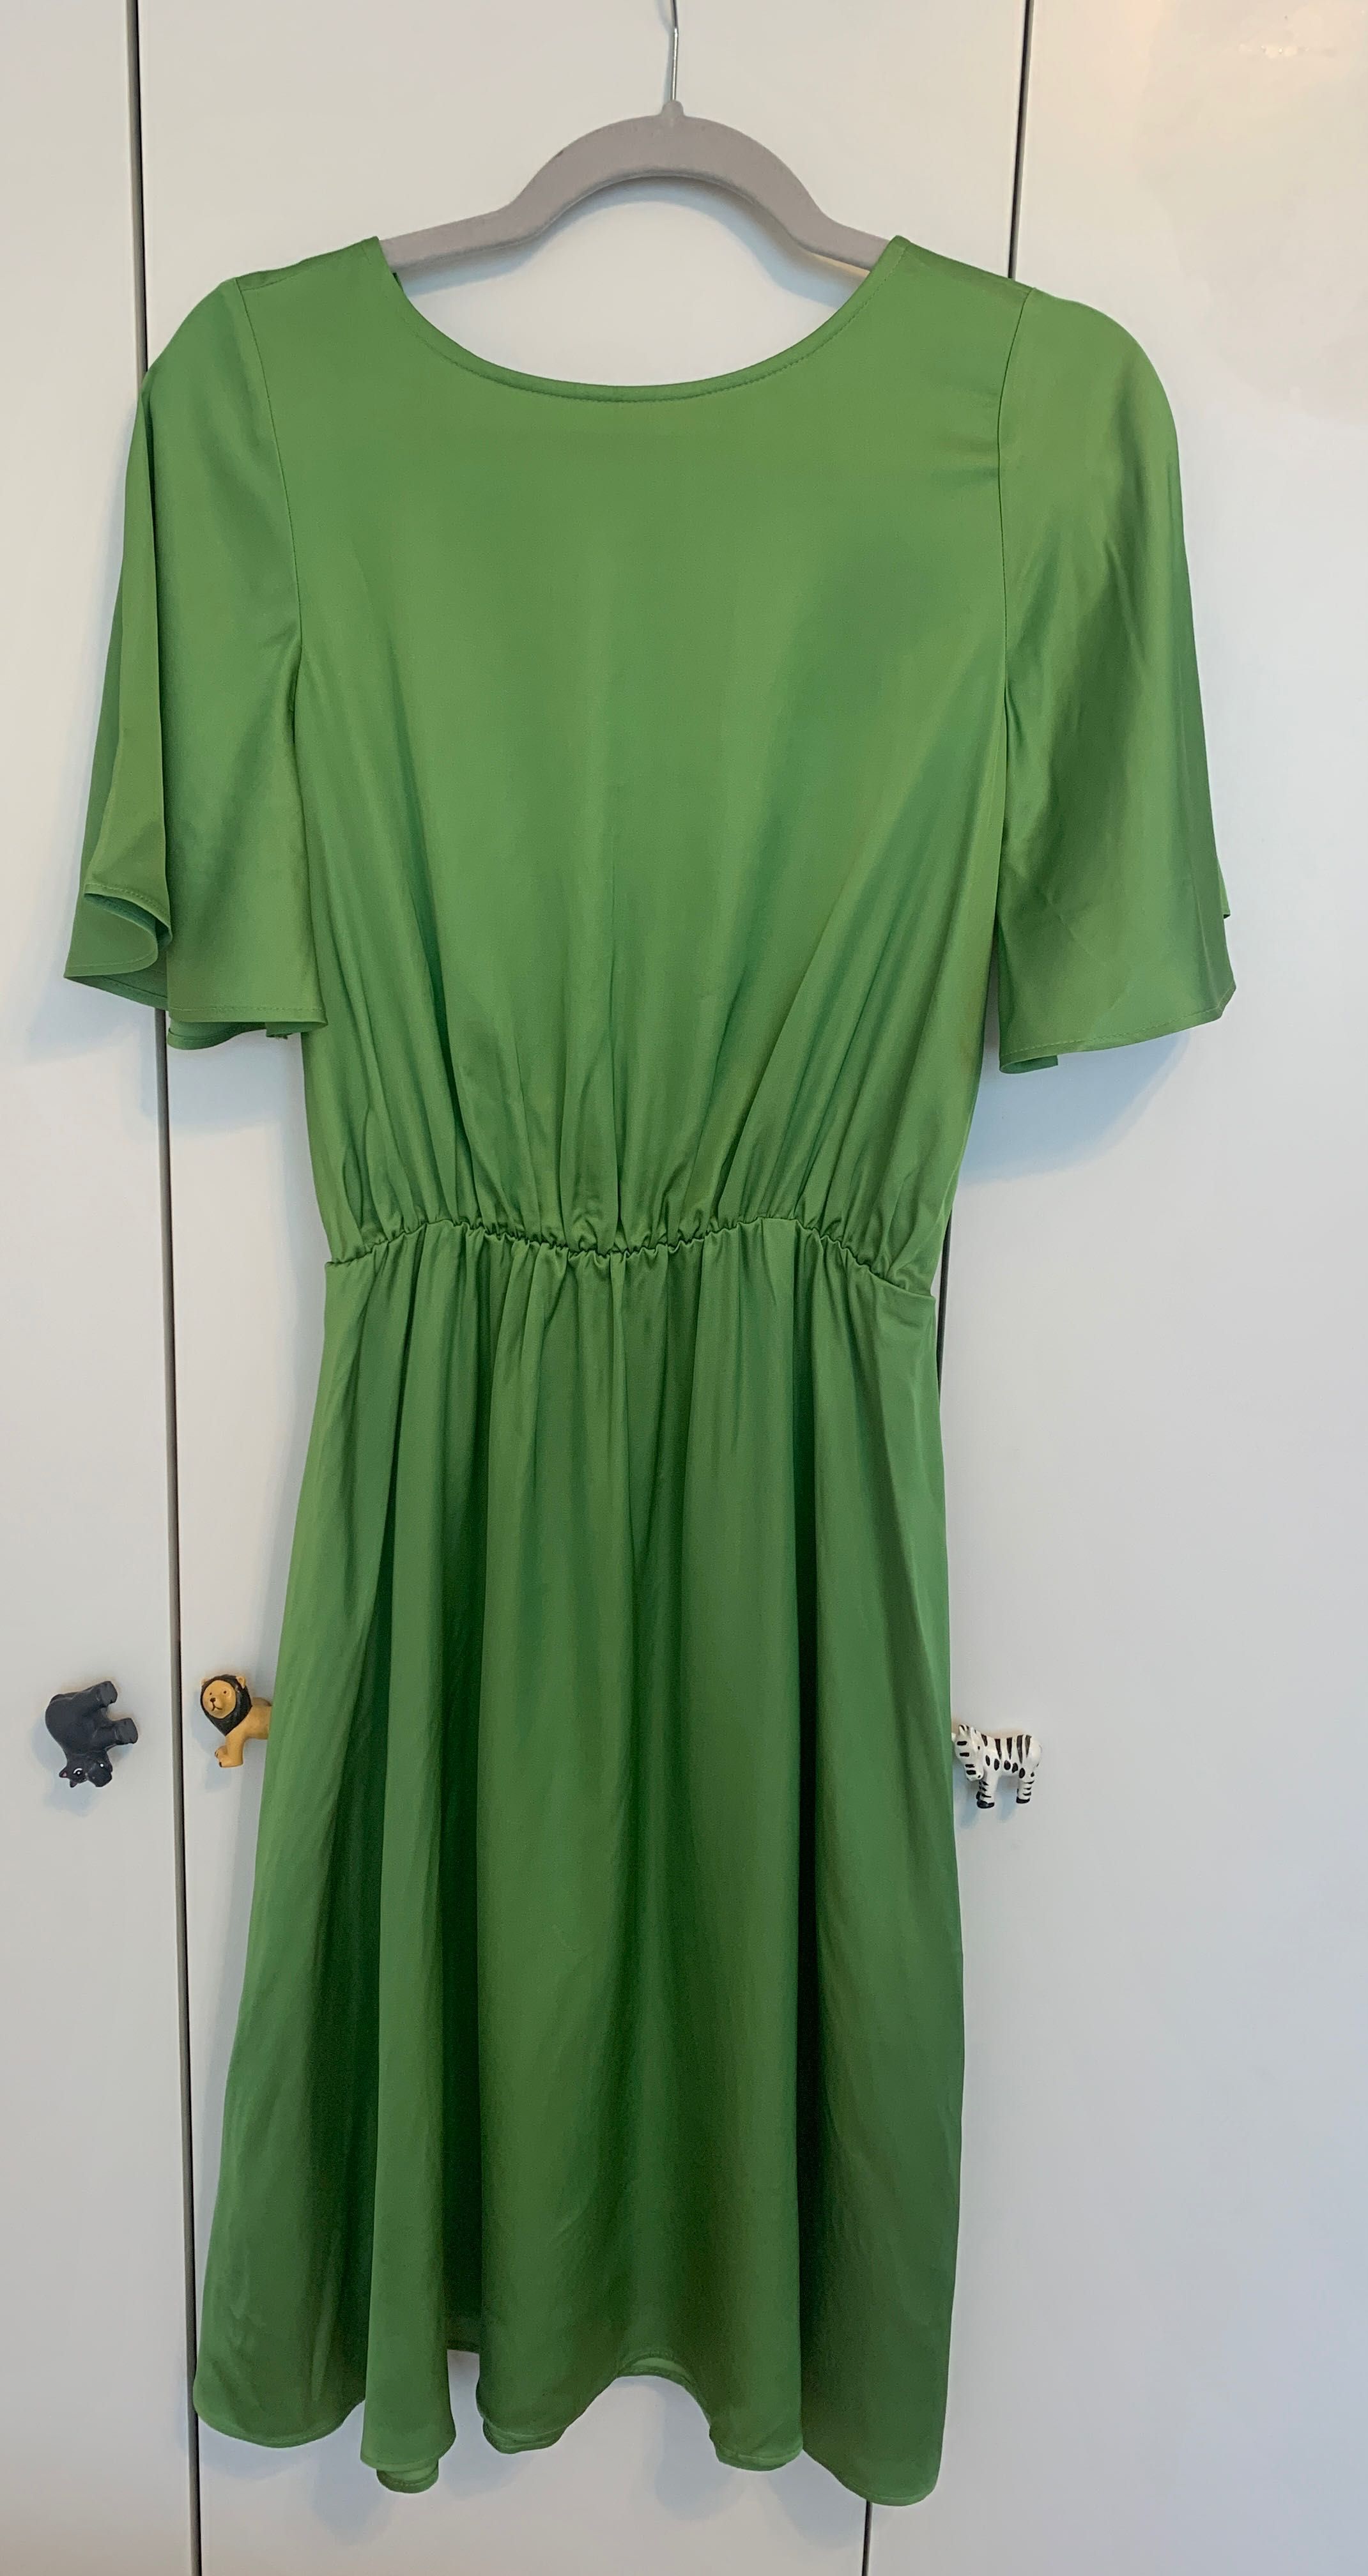 Lamelu sukienka Helen green, XS/S nowa